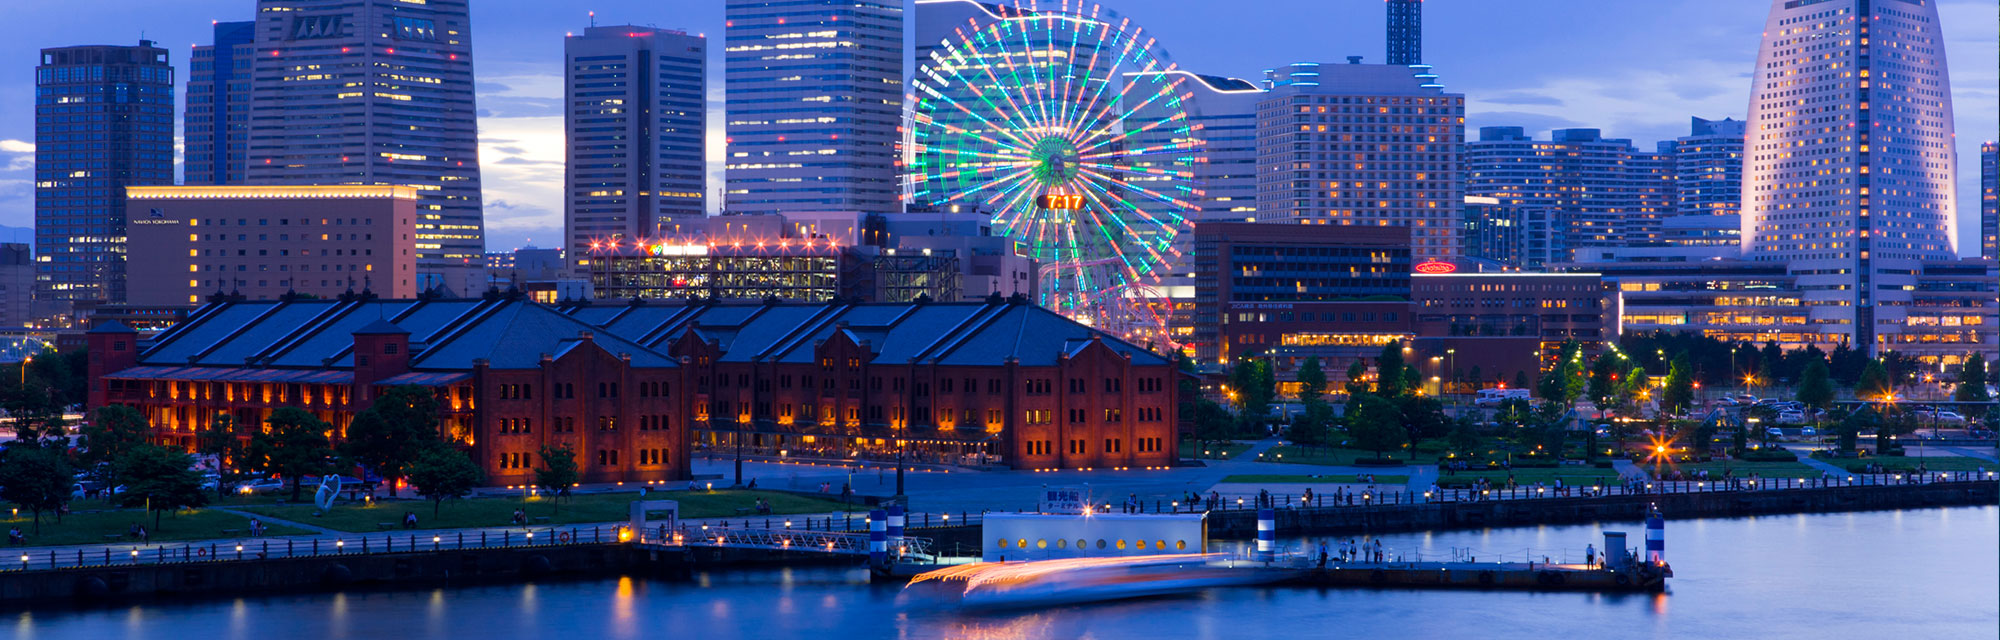 Amazing Yokohama Pictures & Backgrounds